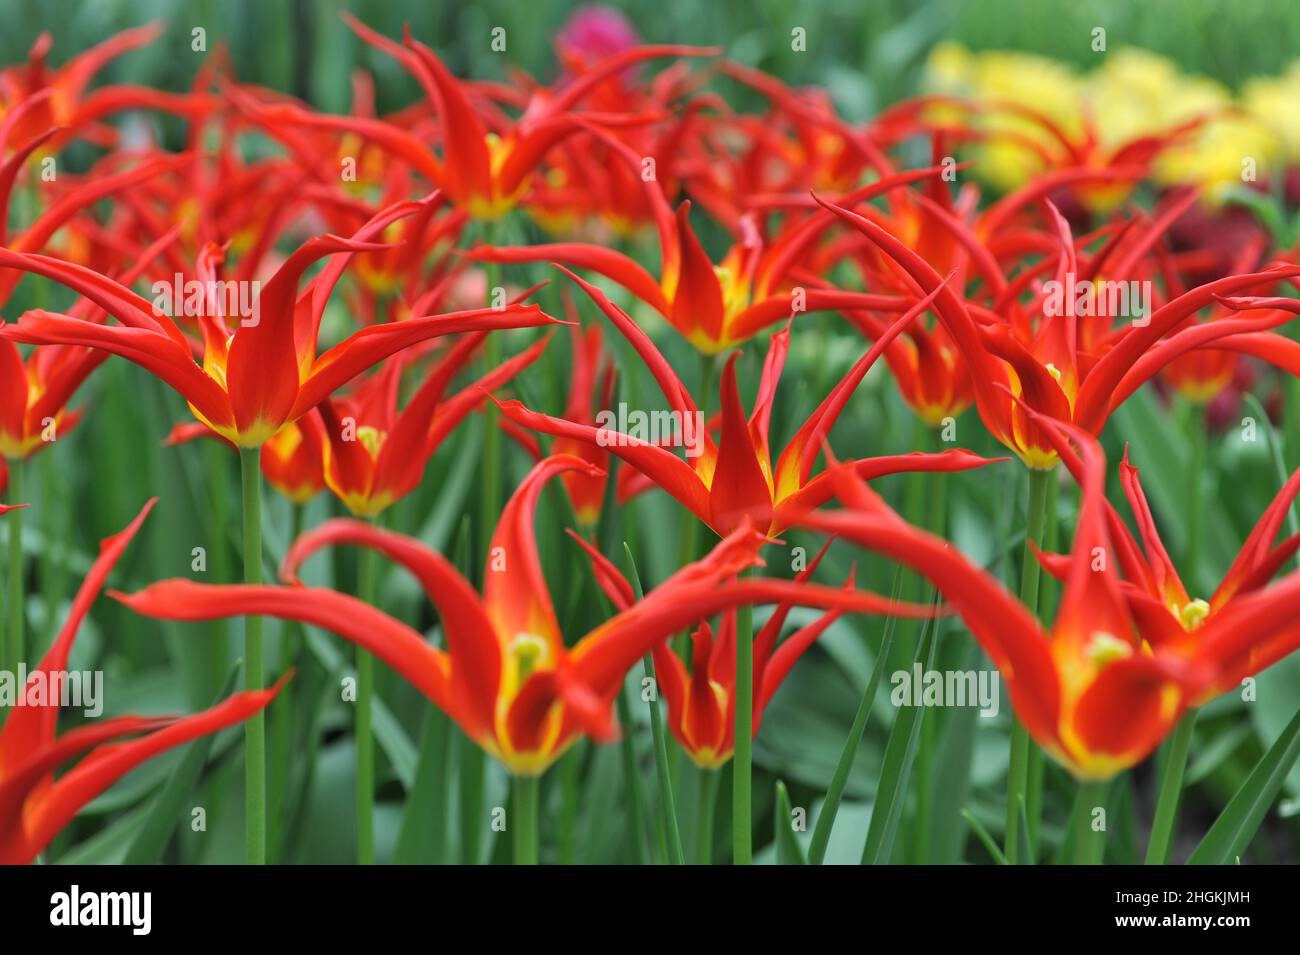 Tulipani rossi e gialli (Tulipa) Ivo con petali insolitamente stretti fioriscono in un giardino nel mese di aprile Foto Stock